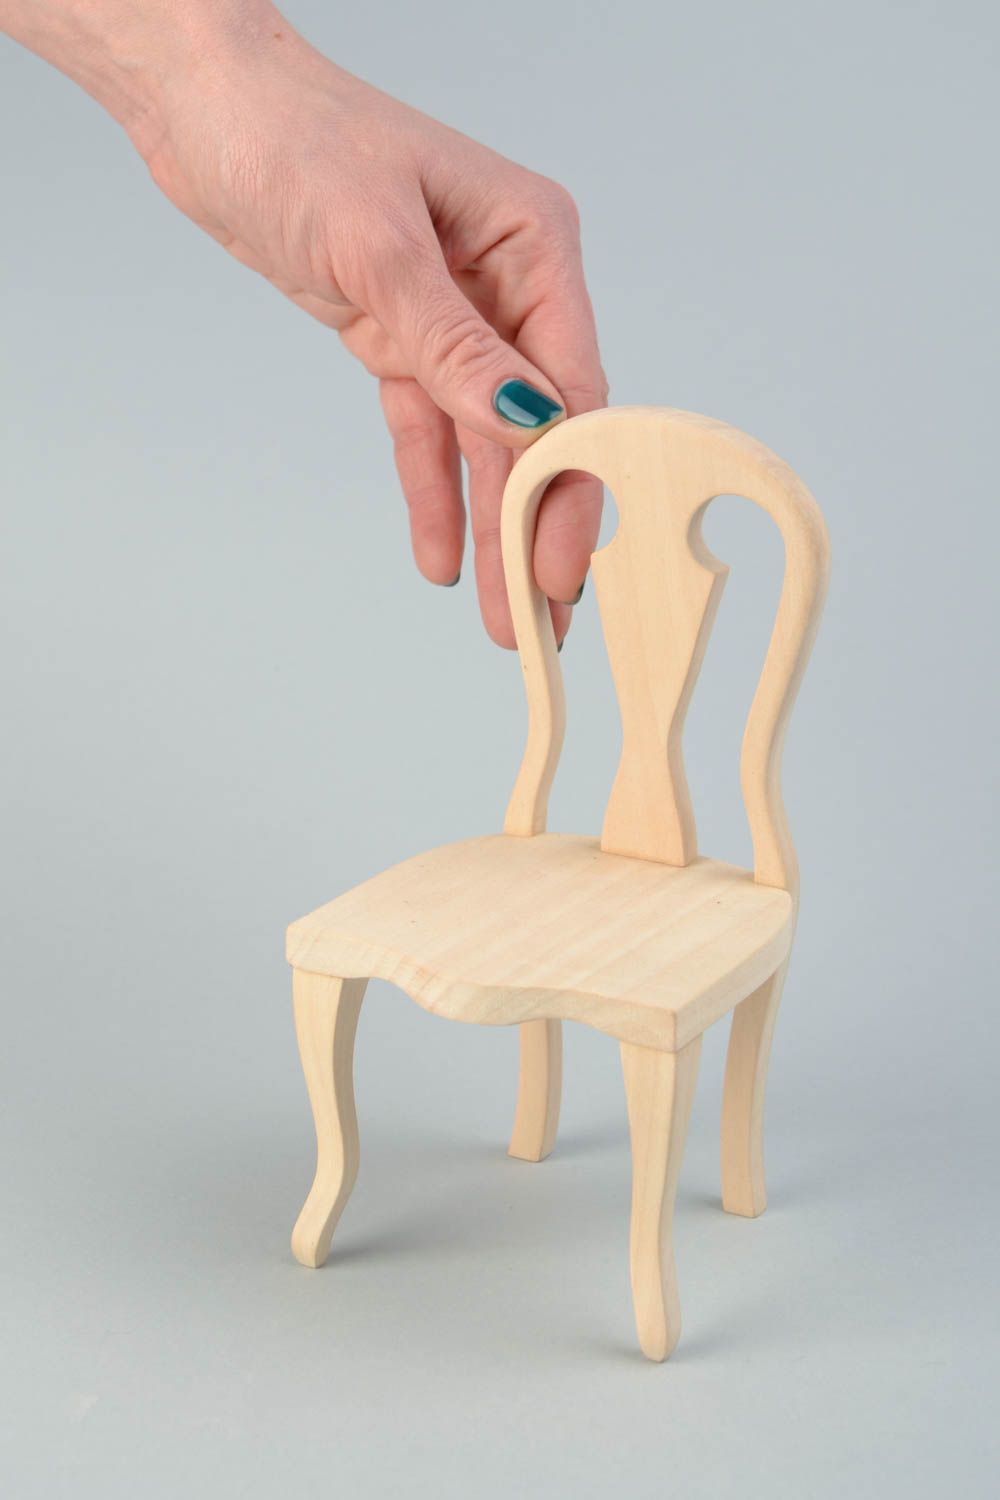 Hölzerner Rohling Stuhl zum Bemalen oder für Decoupage für Puppen Handarbeit foto 2